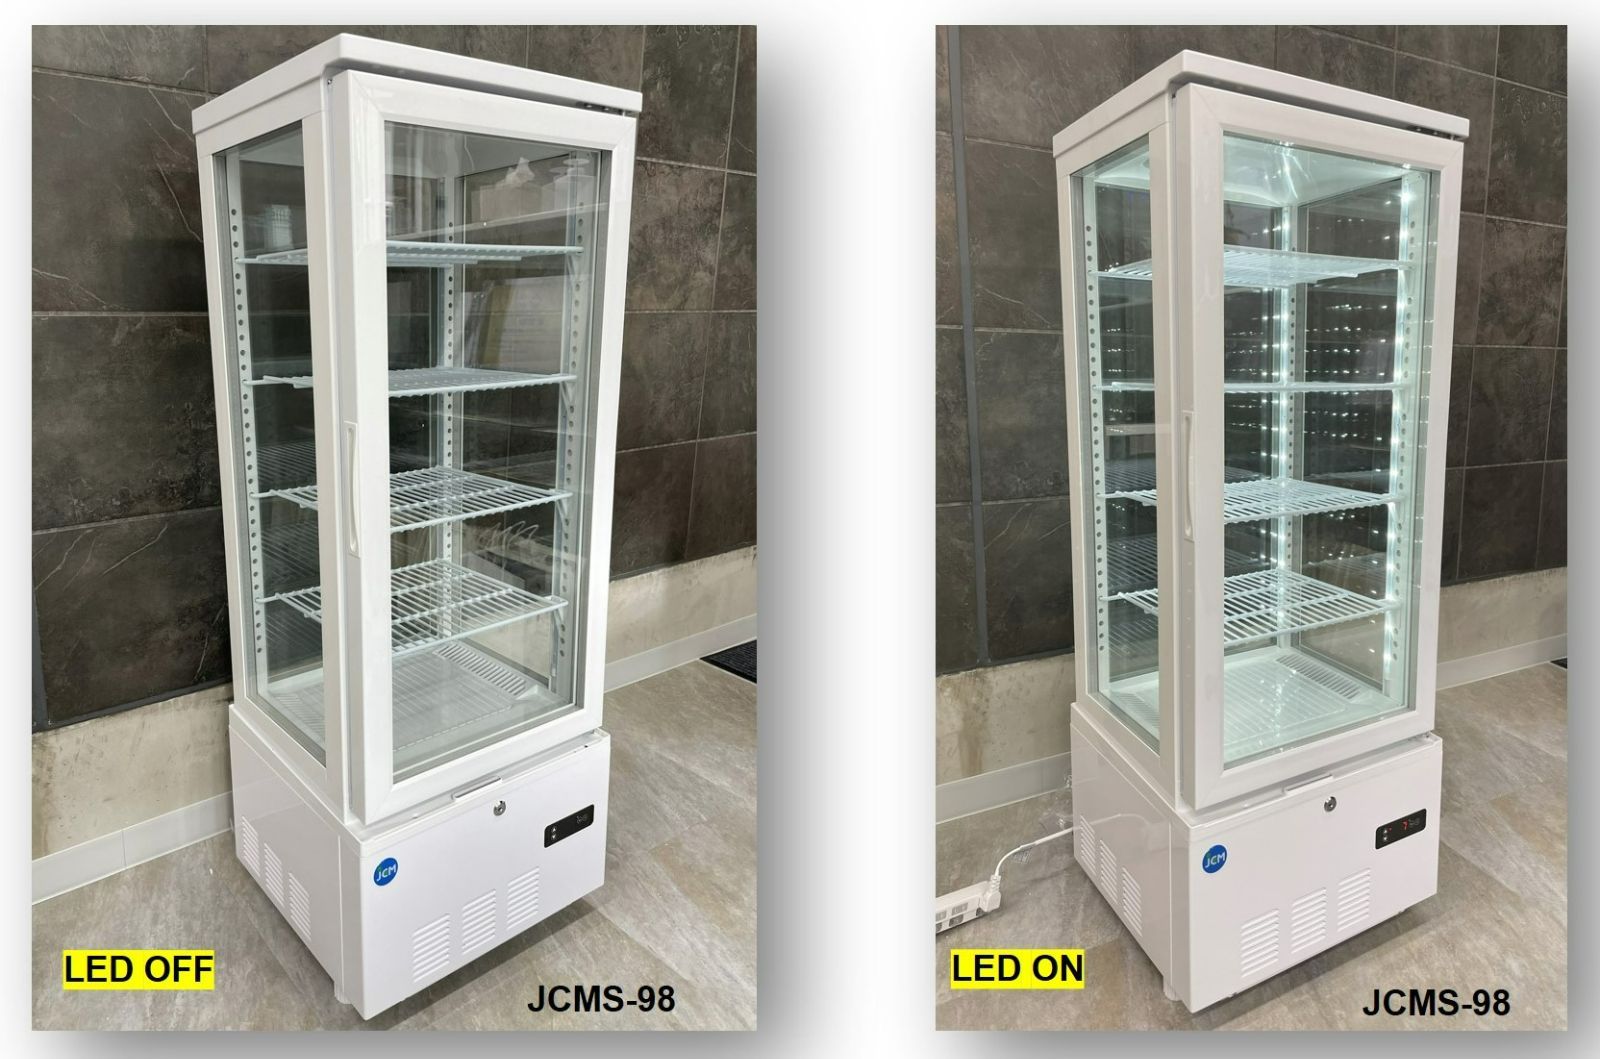 JCMS-98 ４面ガラス冷蔵ショーケース【新品 保証付】今年度新機種 シグマ・リテールテック株式会社 メルカリ